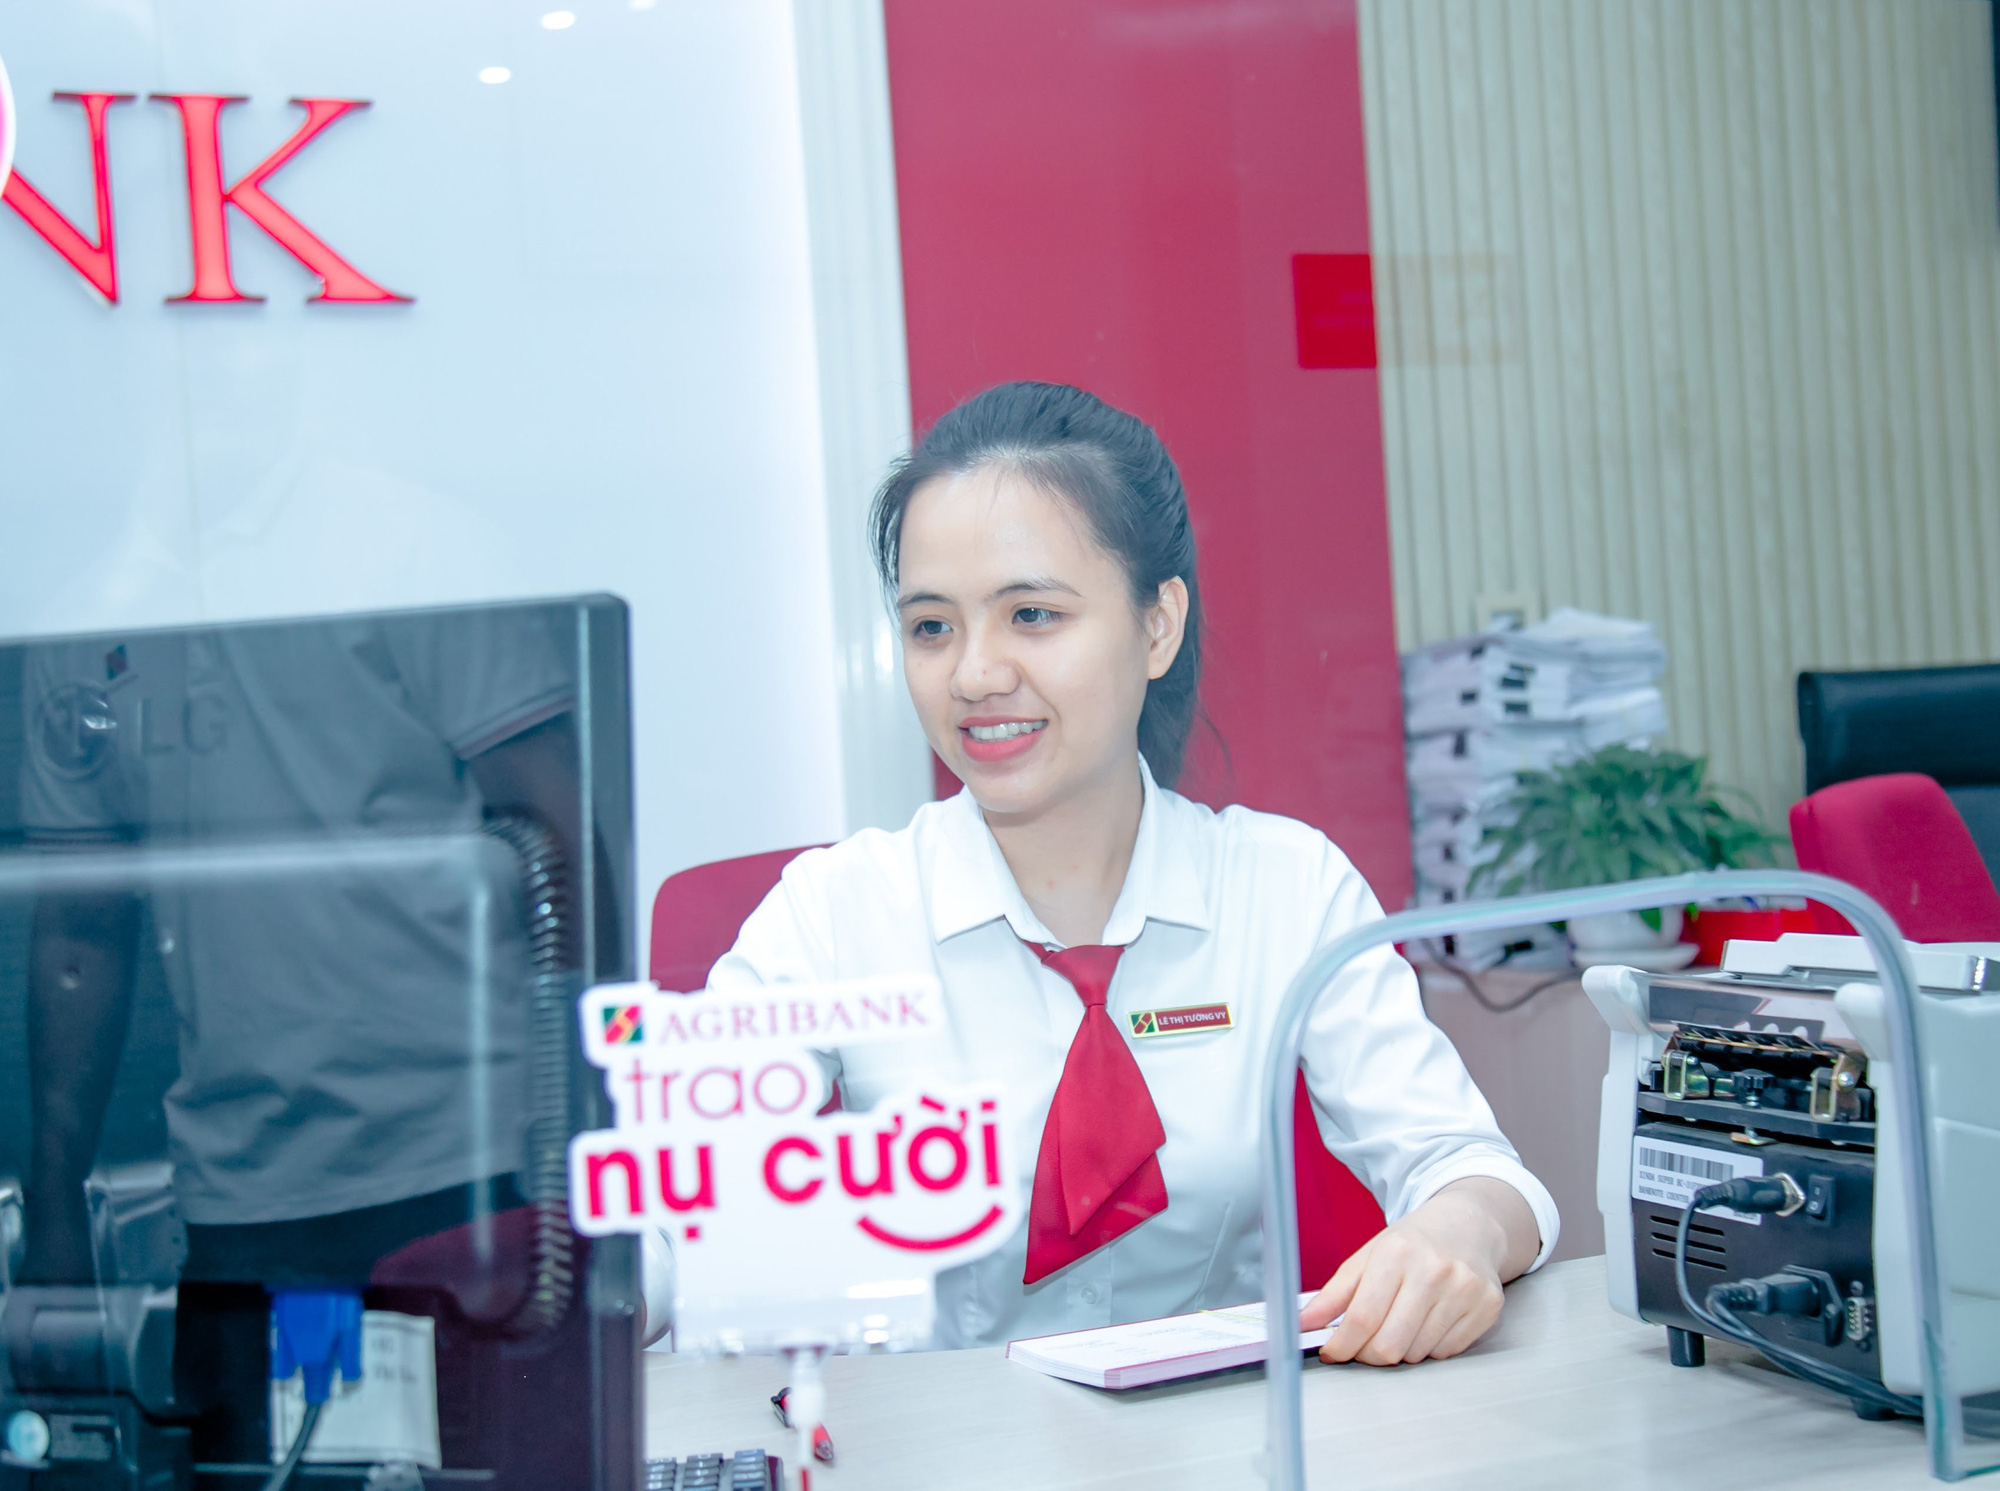 Agribank Phú Yên triển khai đồng bộ nhiều giải pháp hỗ trợ khách hàng, góp phần đẩy lùi tín dụng đen - Ảnh 4.